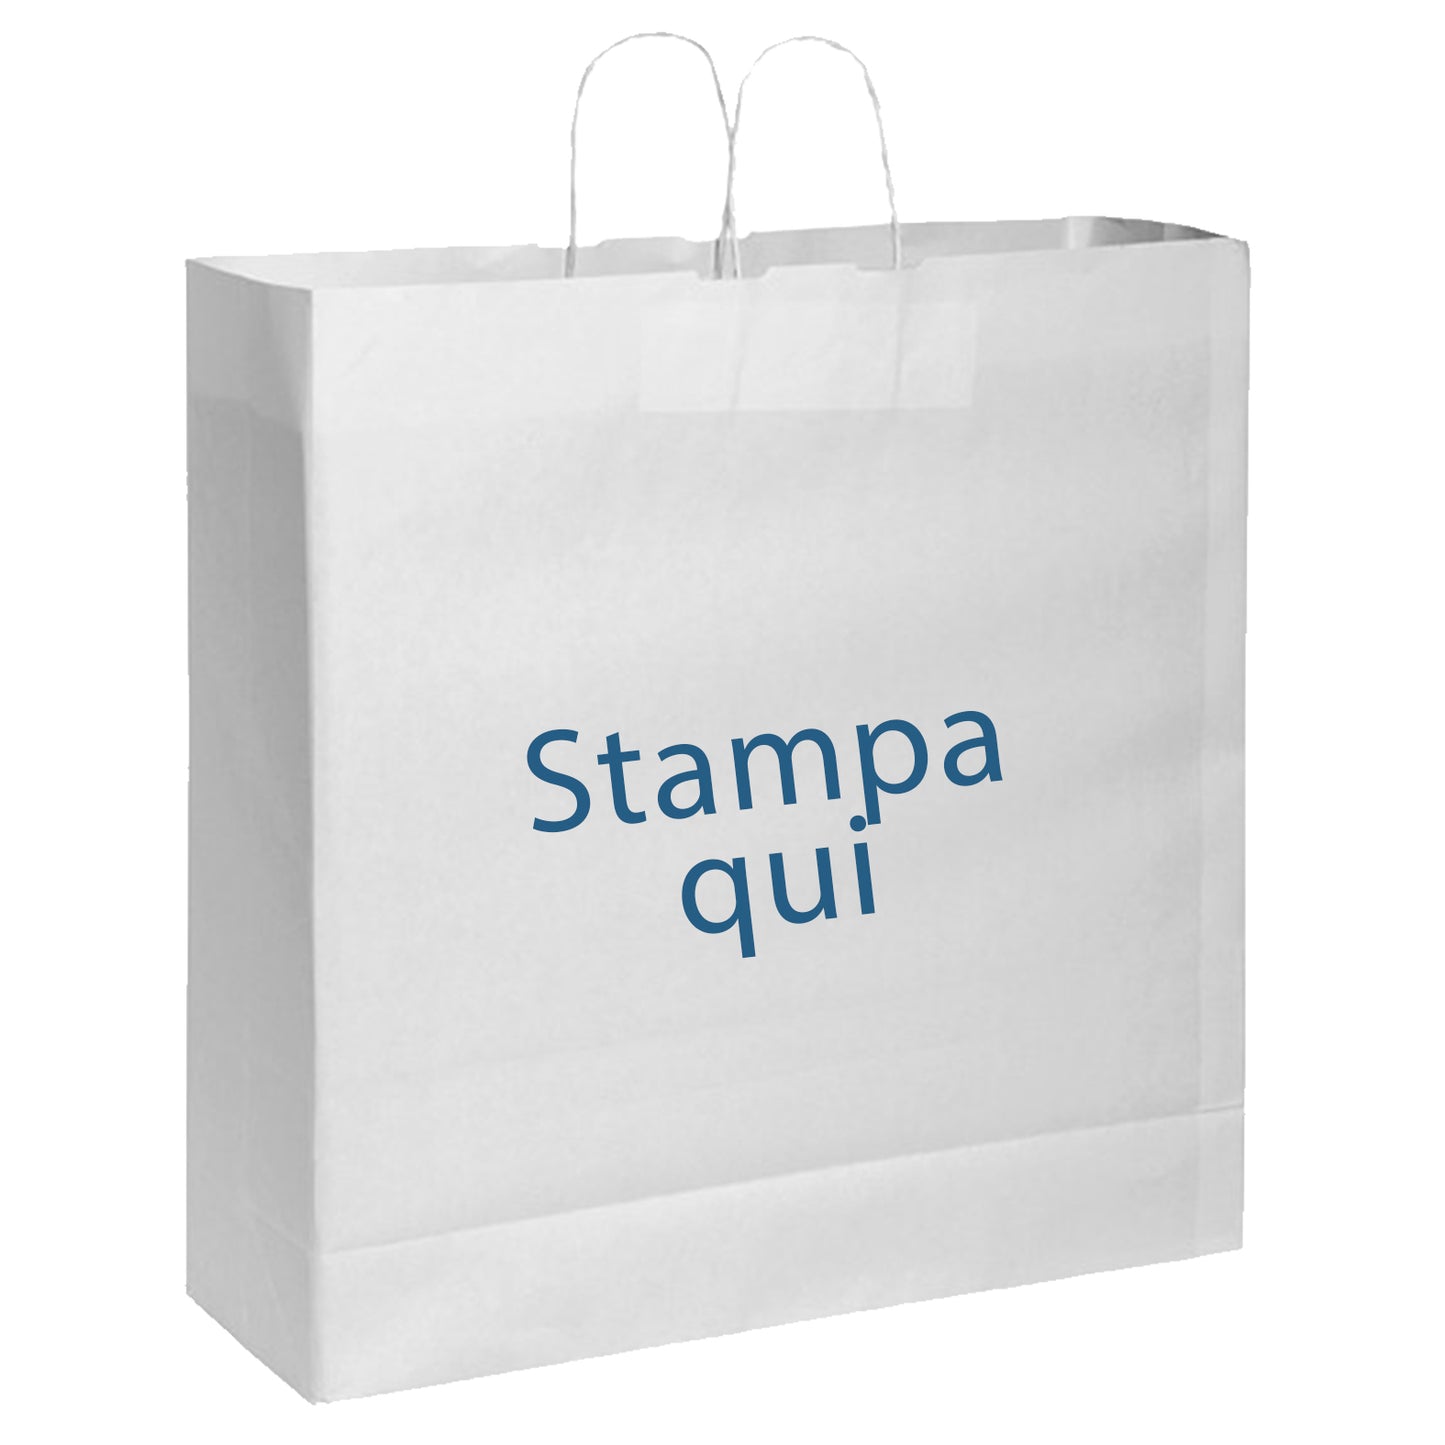 busta shopper bag in carta con personalizzazione